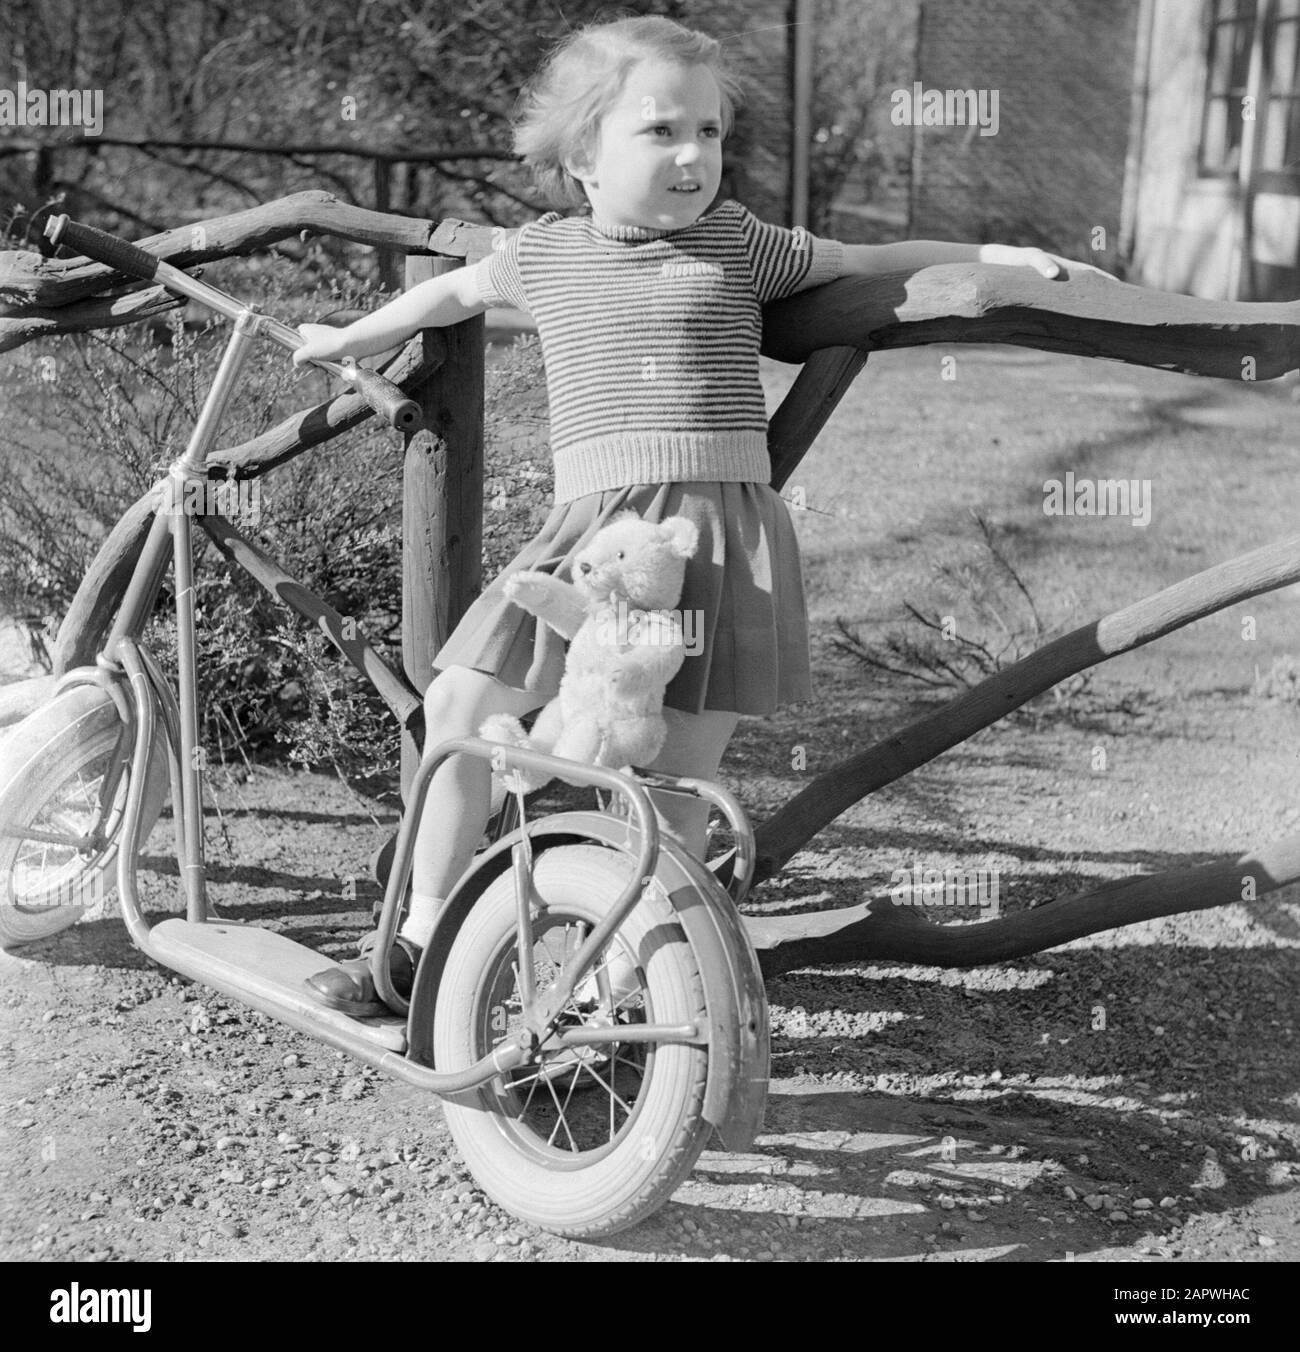 Modefotografie Mädchen mit Autoped und Teddybär Datum: 1952 Schlagwörter: Autopeds, Kleidung, Mädchen Stockfoto